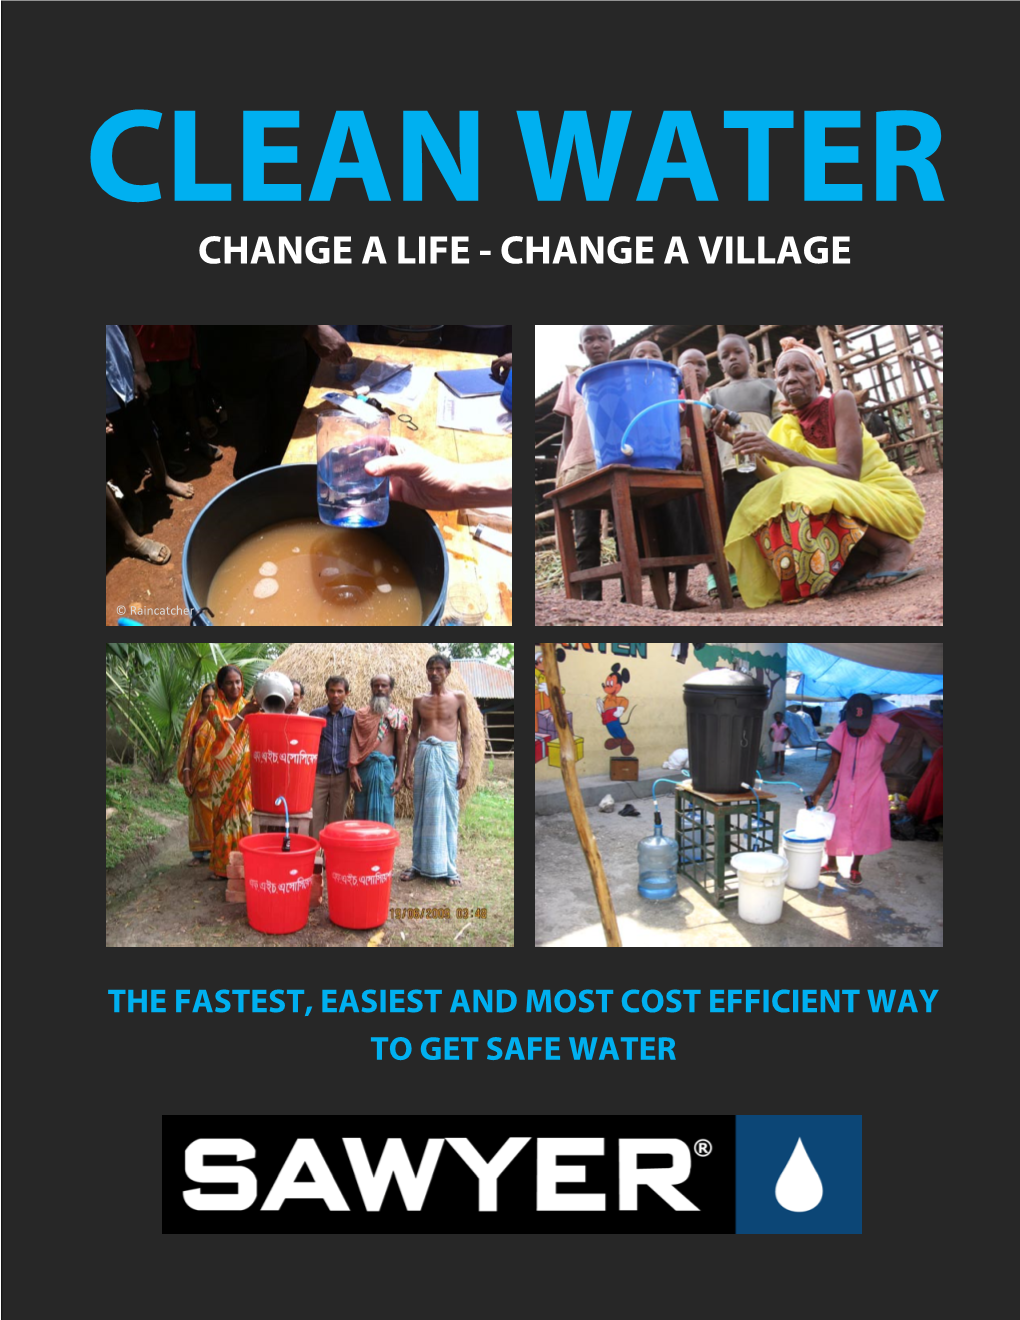 Change a Life - Change a Village